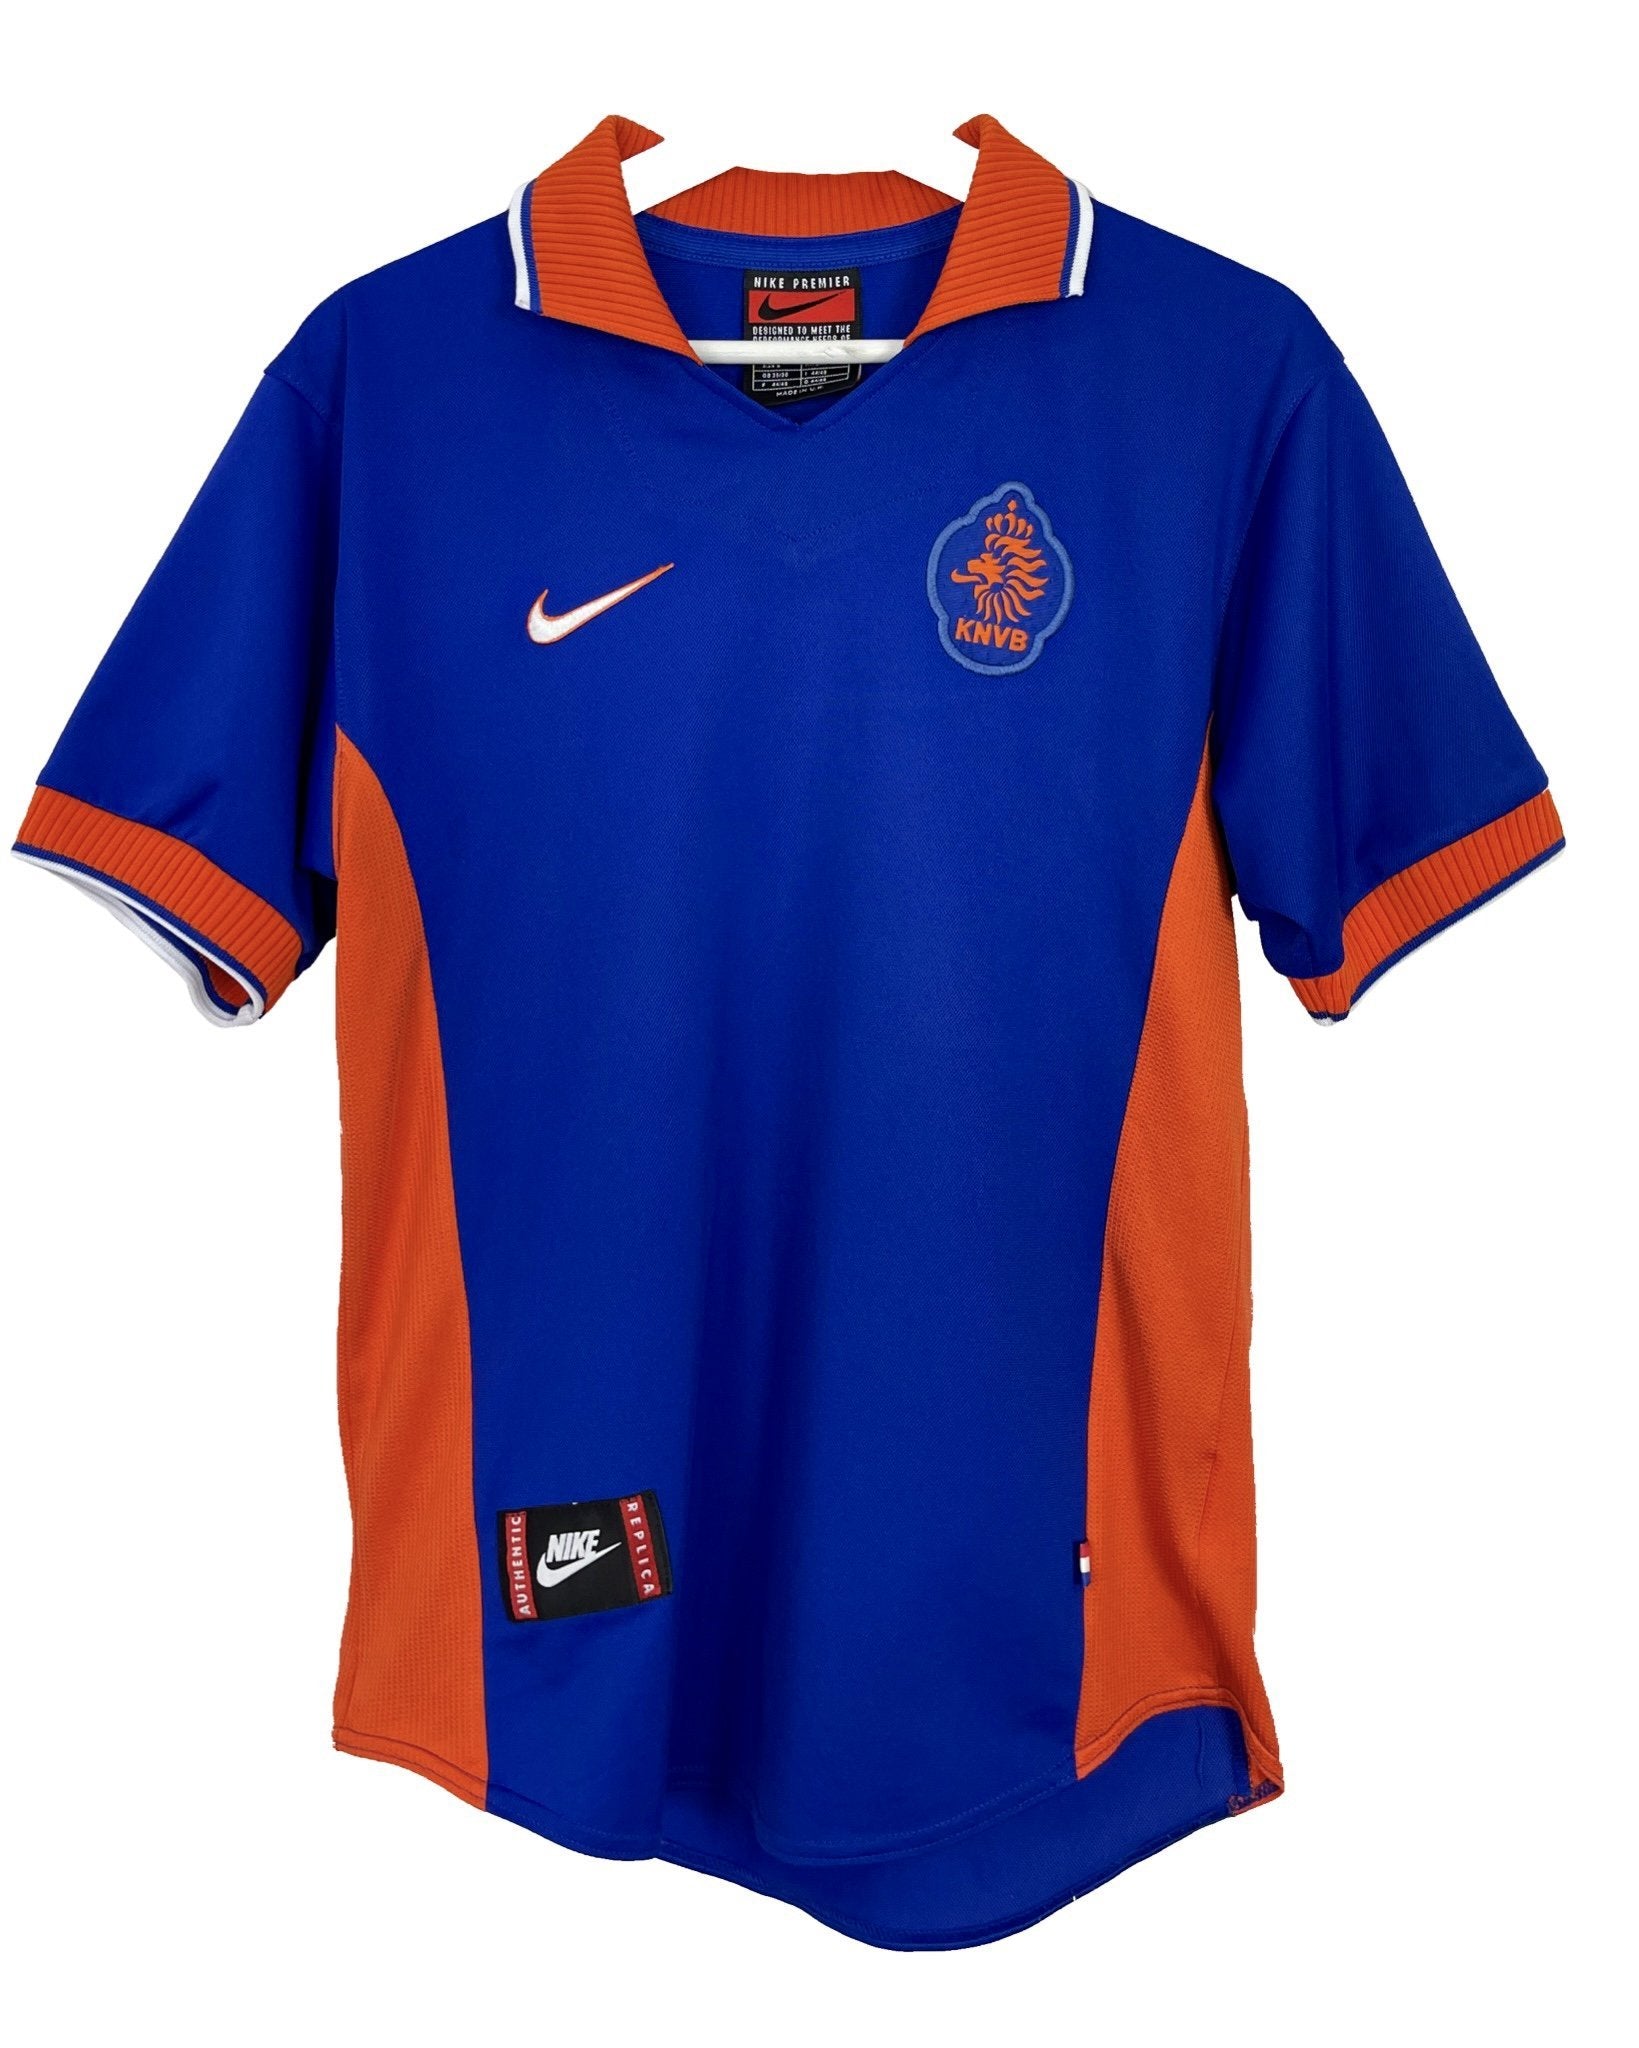  Maillot de football Nike Maillot de football - Netherlands 97' 98' - S - PLOMOSTORE